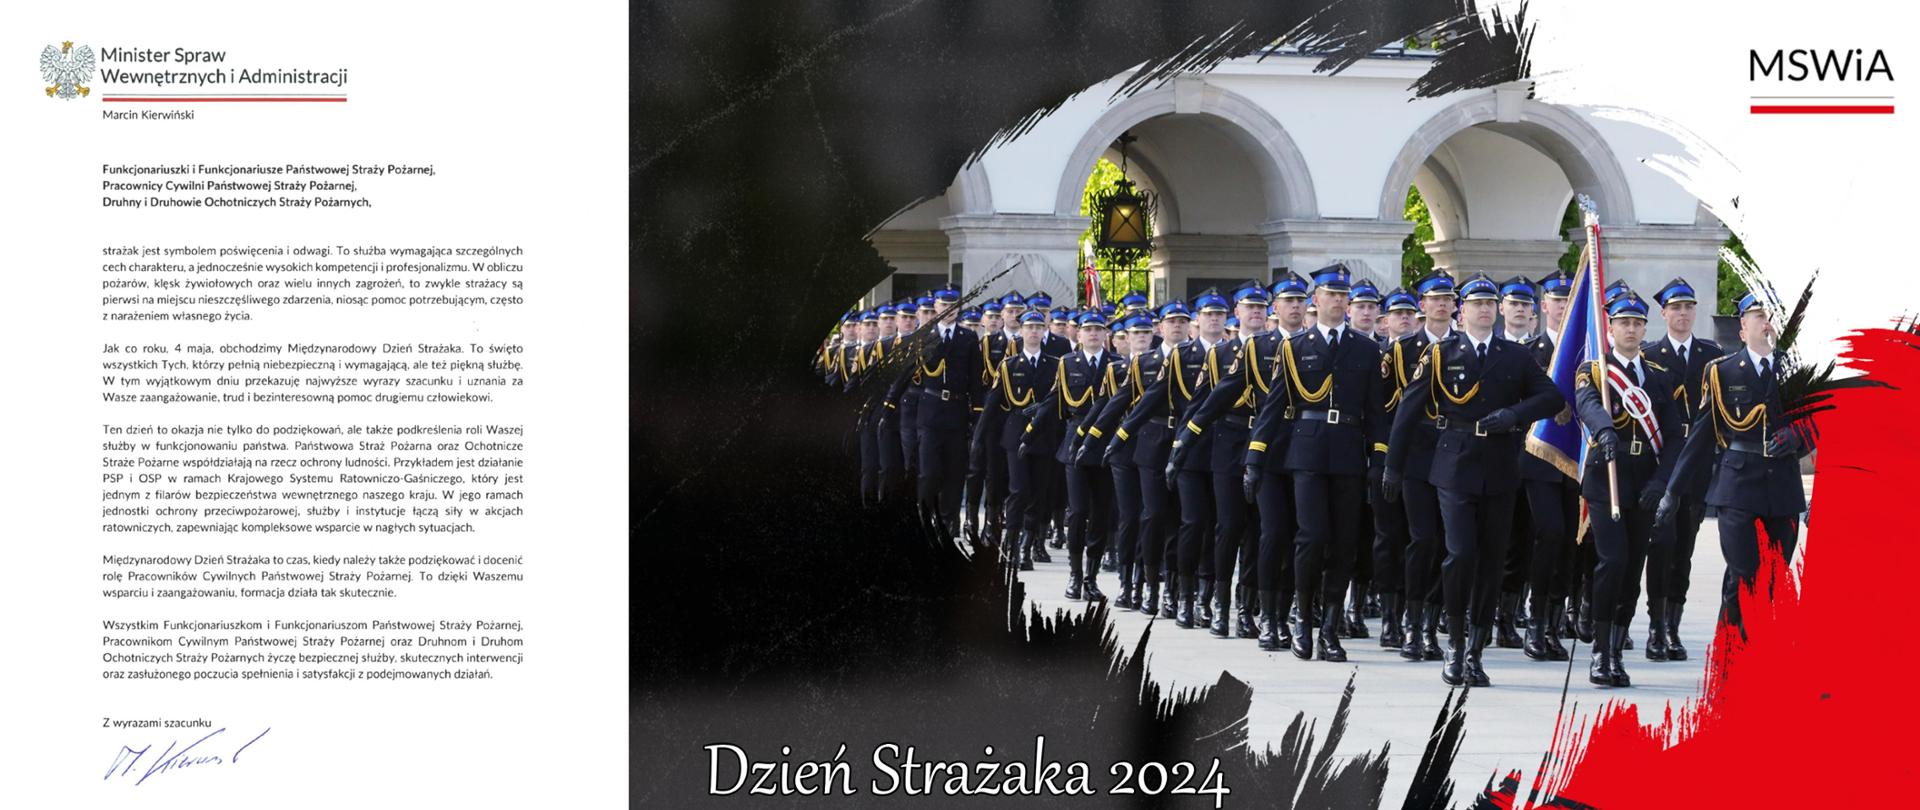 Baner z życzeniami Ministra Spraw Wewnętrznych i Administracji Marcina Kierwińskiego z okazji Dnia Strażaka